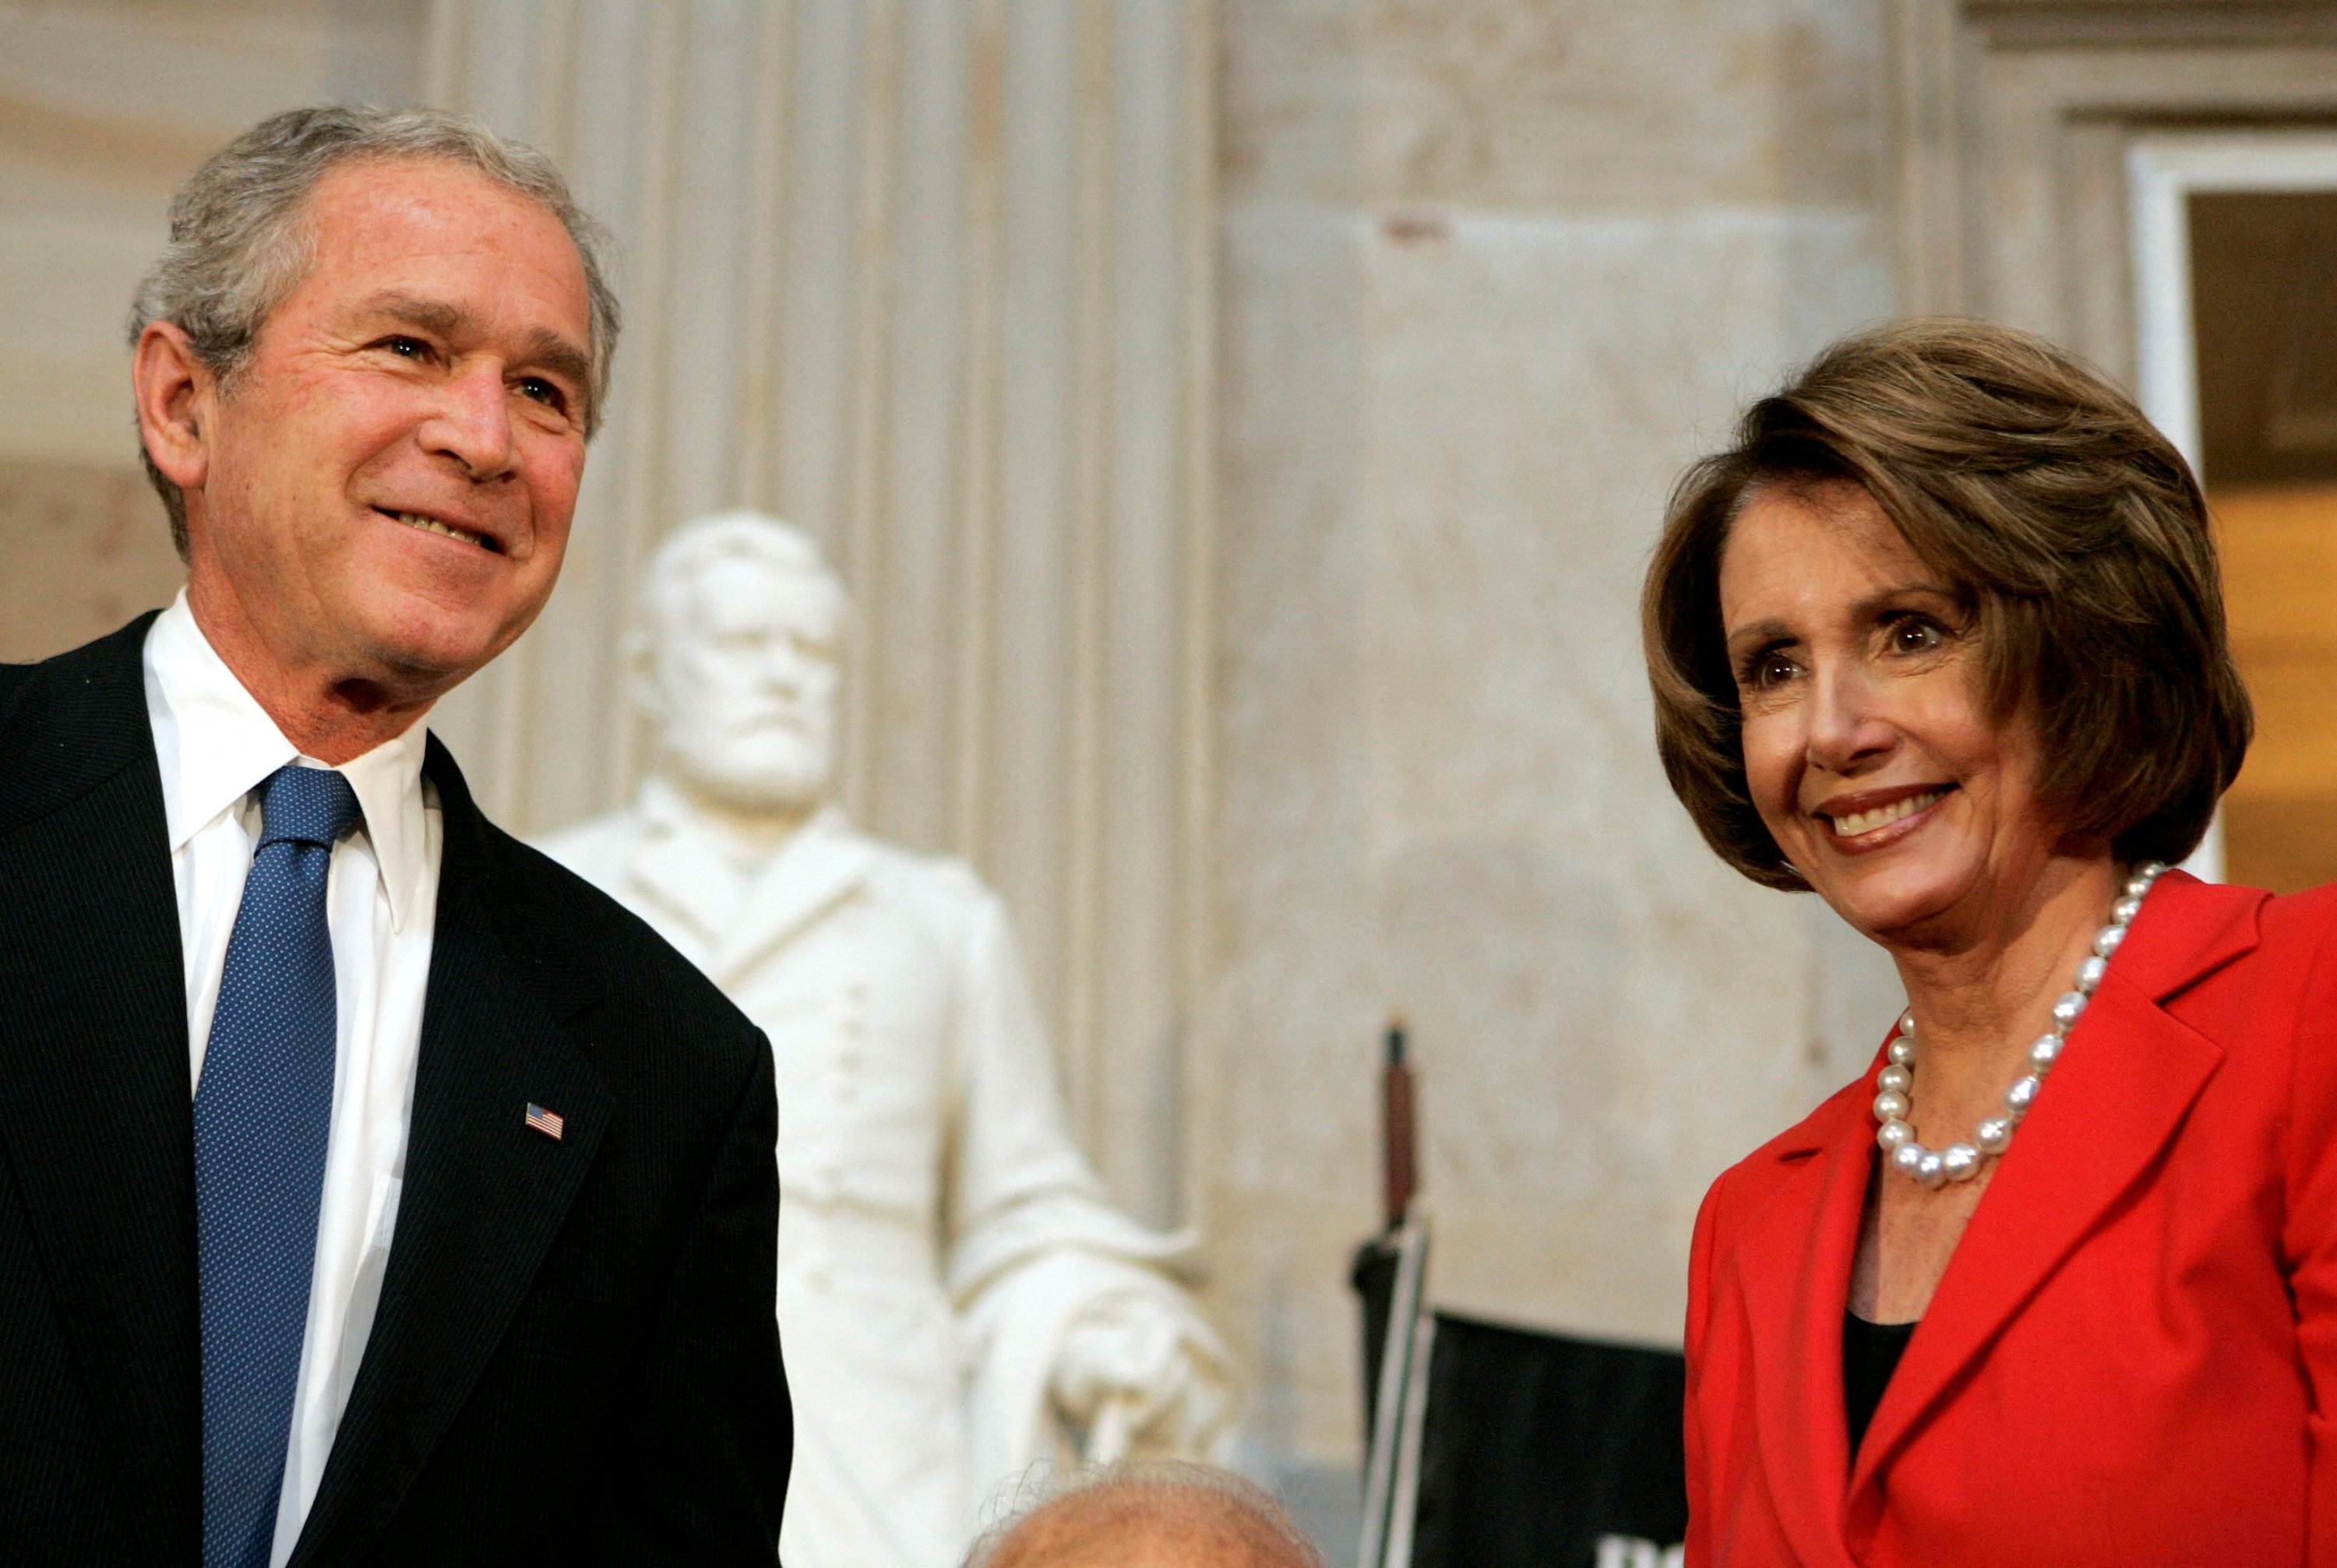 ABD Başkanı George W. Bush (solda) ve Meclis Başkanı Nancy Pelosi, Dr. Michael Ellis DeBakey (resimde yok), Washington, ABD'deki Capitol Hill'deki capitol rotunda'da, 23 Nisan 2008. (Reuters Dosya Fotoğrafı)